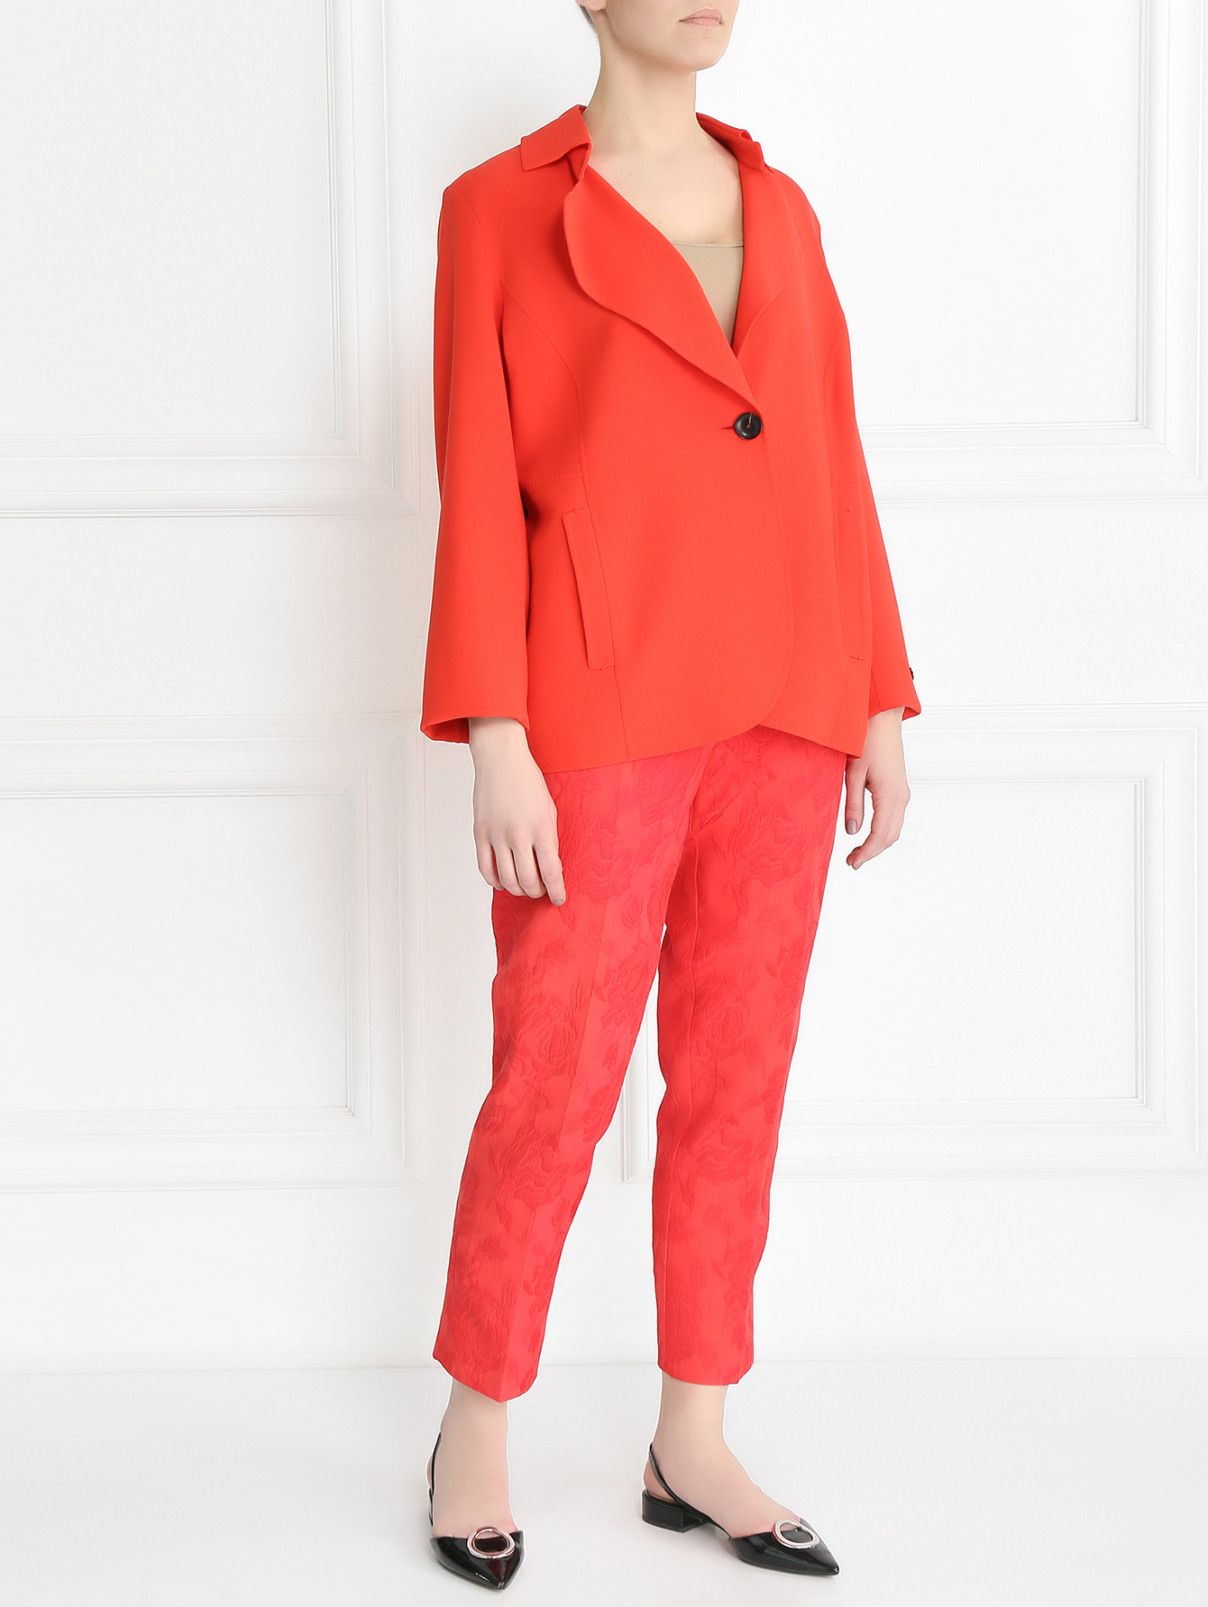 Укороченные брюки с цветочной вышивкой Marina Rinaldi  –  Модель Общий вид  – Цвет:  Красный